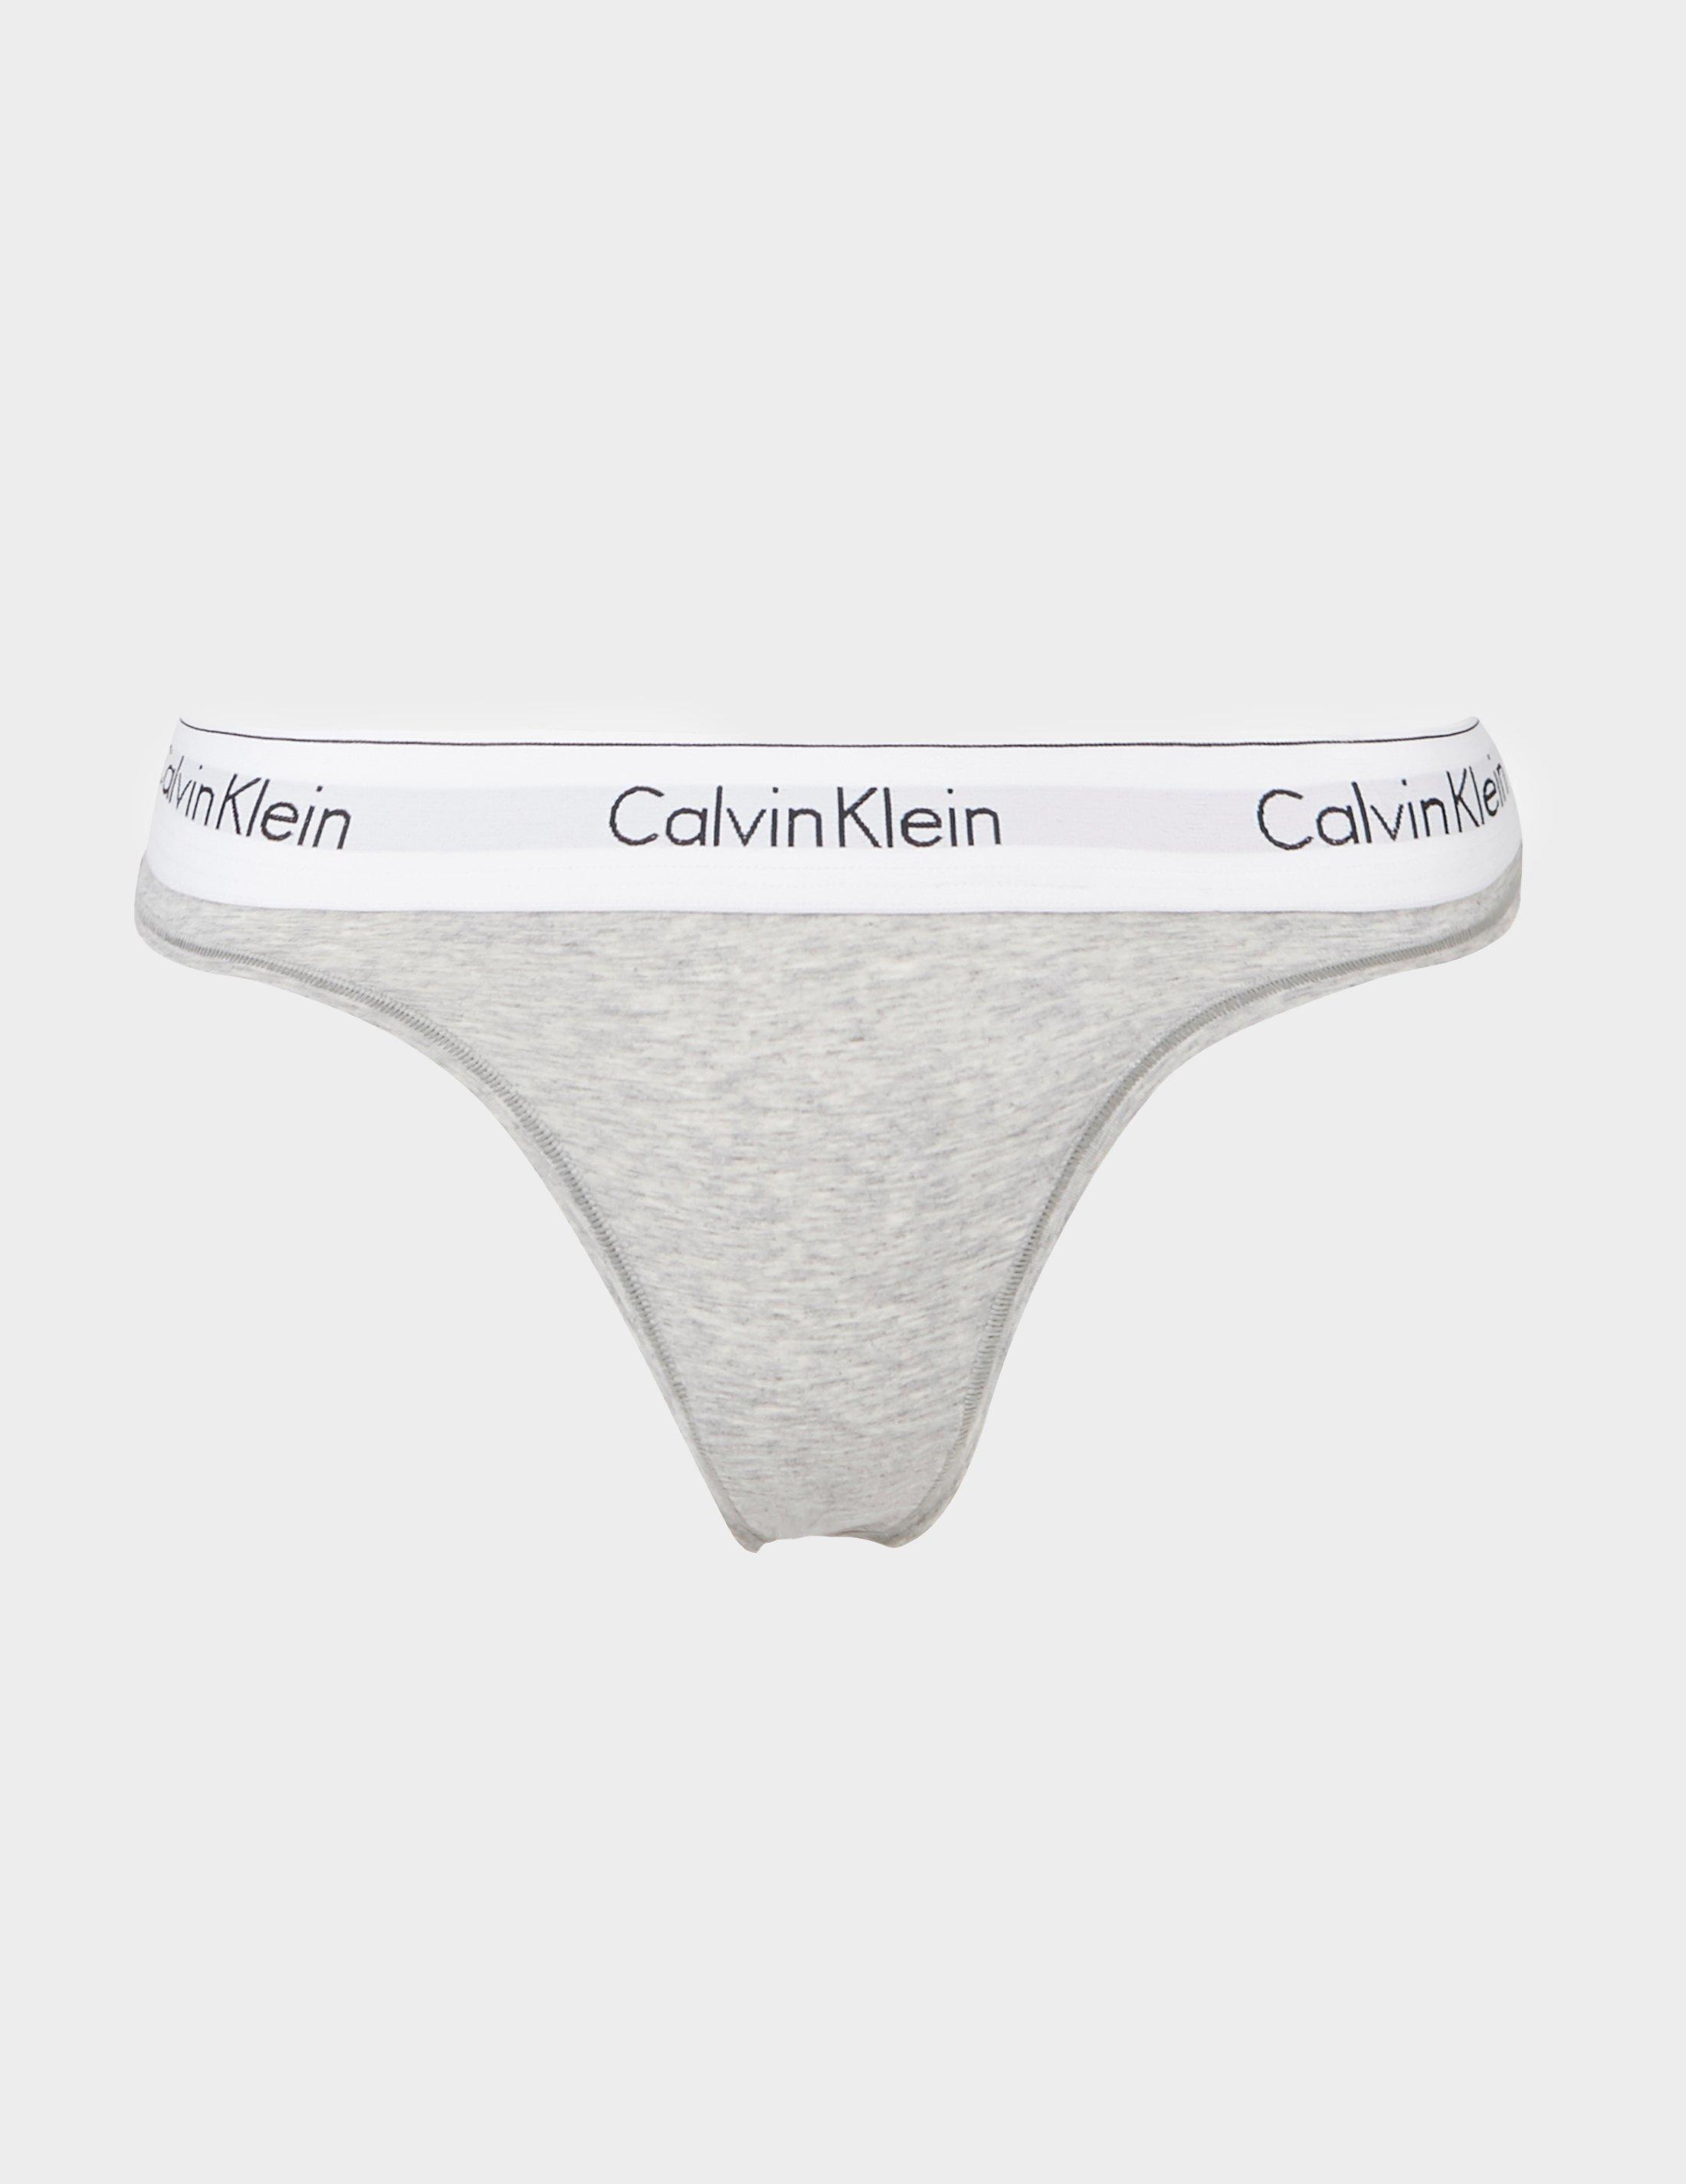 calvin klein underwear women model